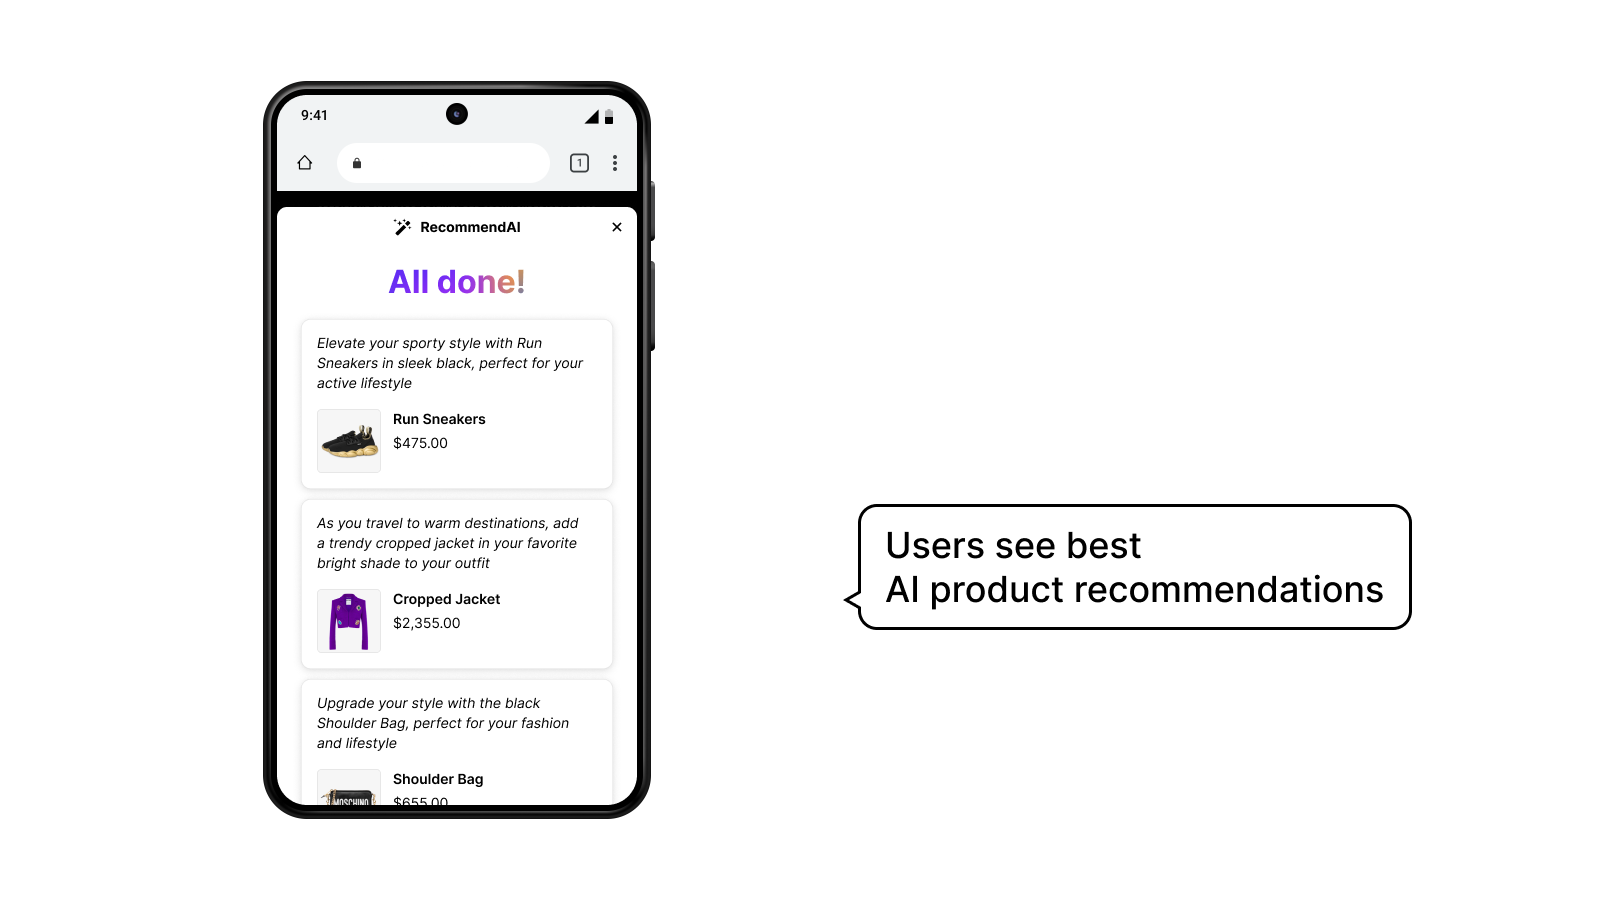 Usuários veem as melhores recomendações de produtos por IA